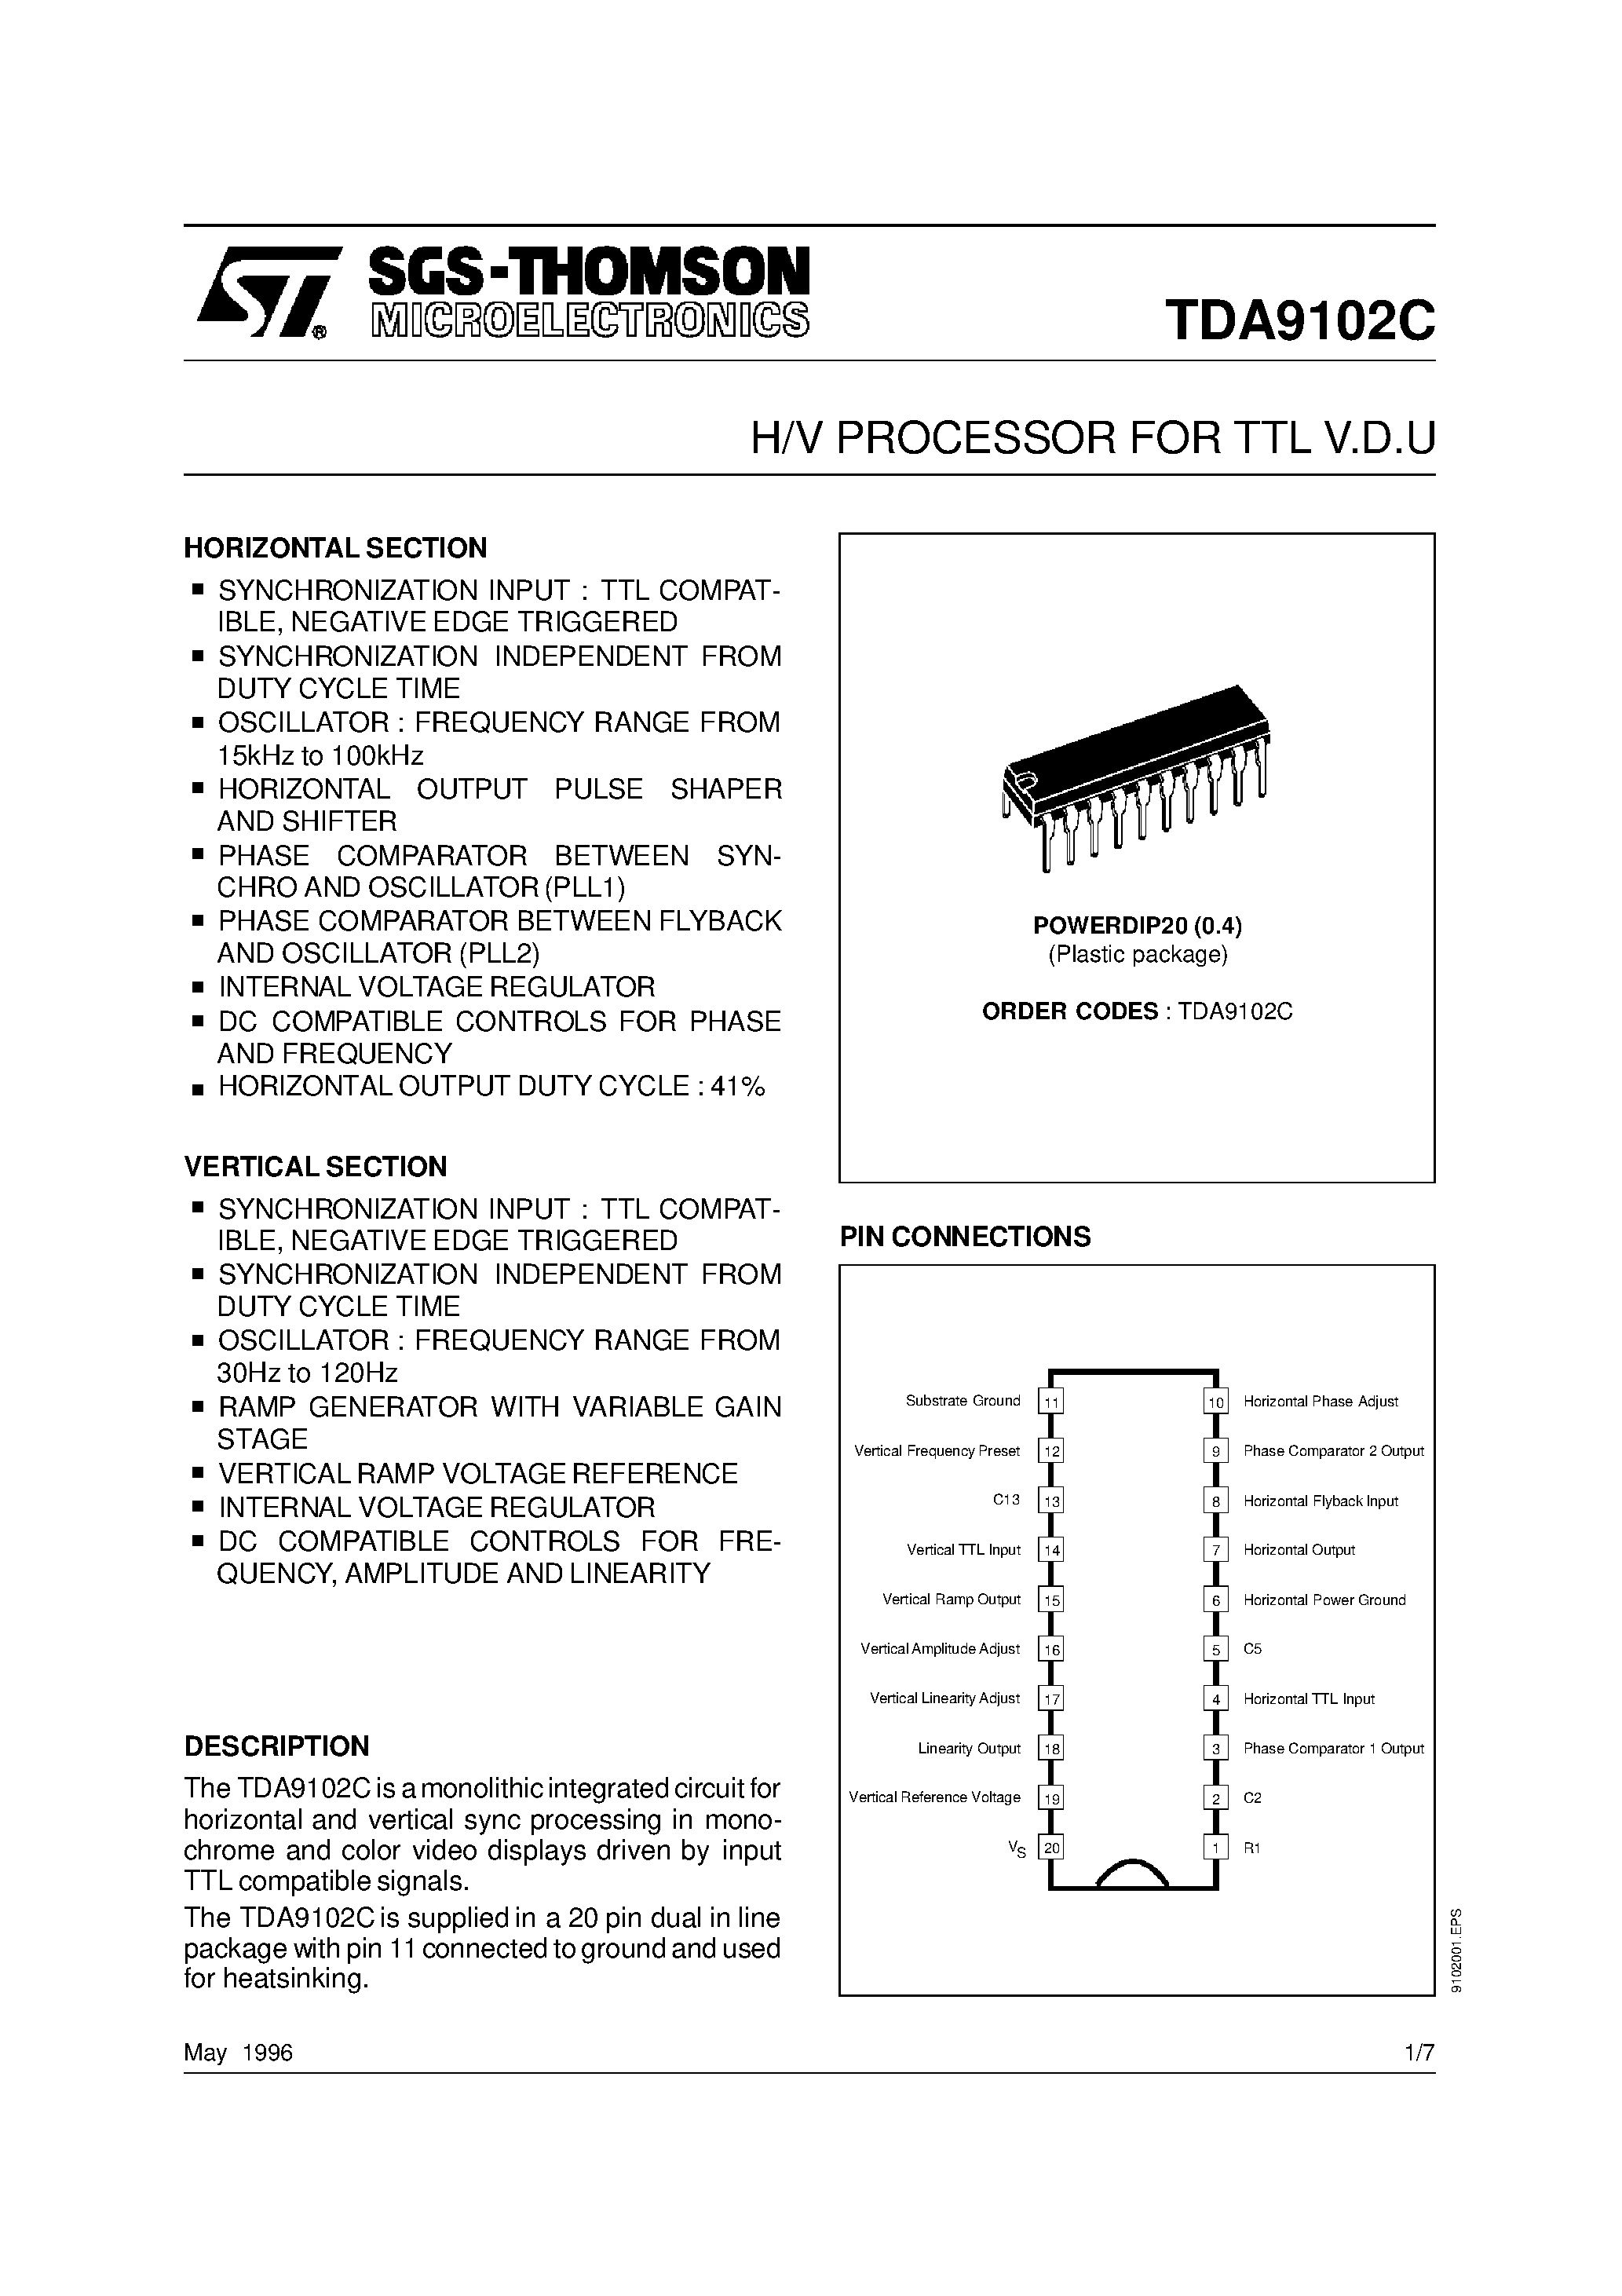 Datasheet TDA9102 - H/V PROCESSOR FOR TTL V.D.U page 1